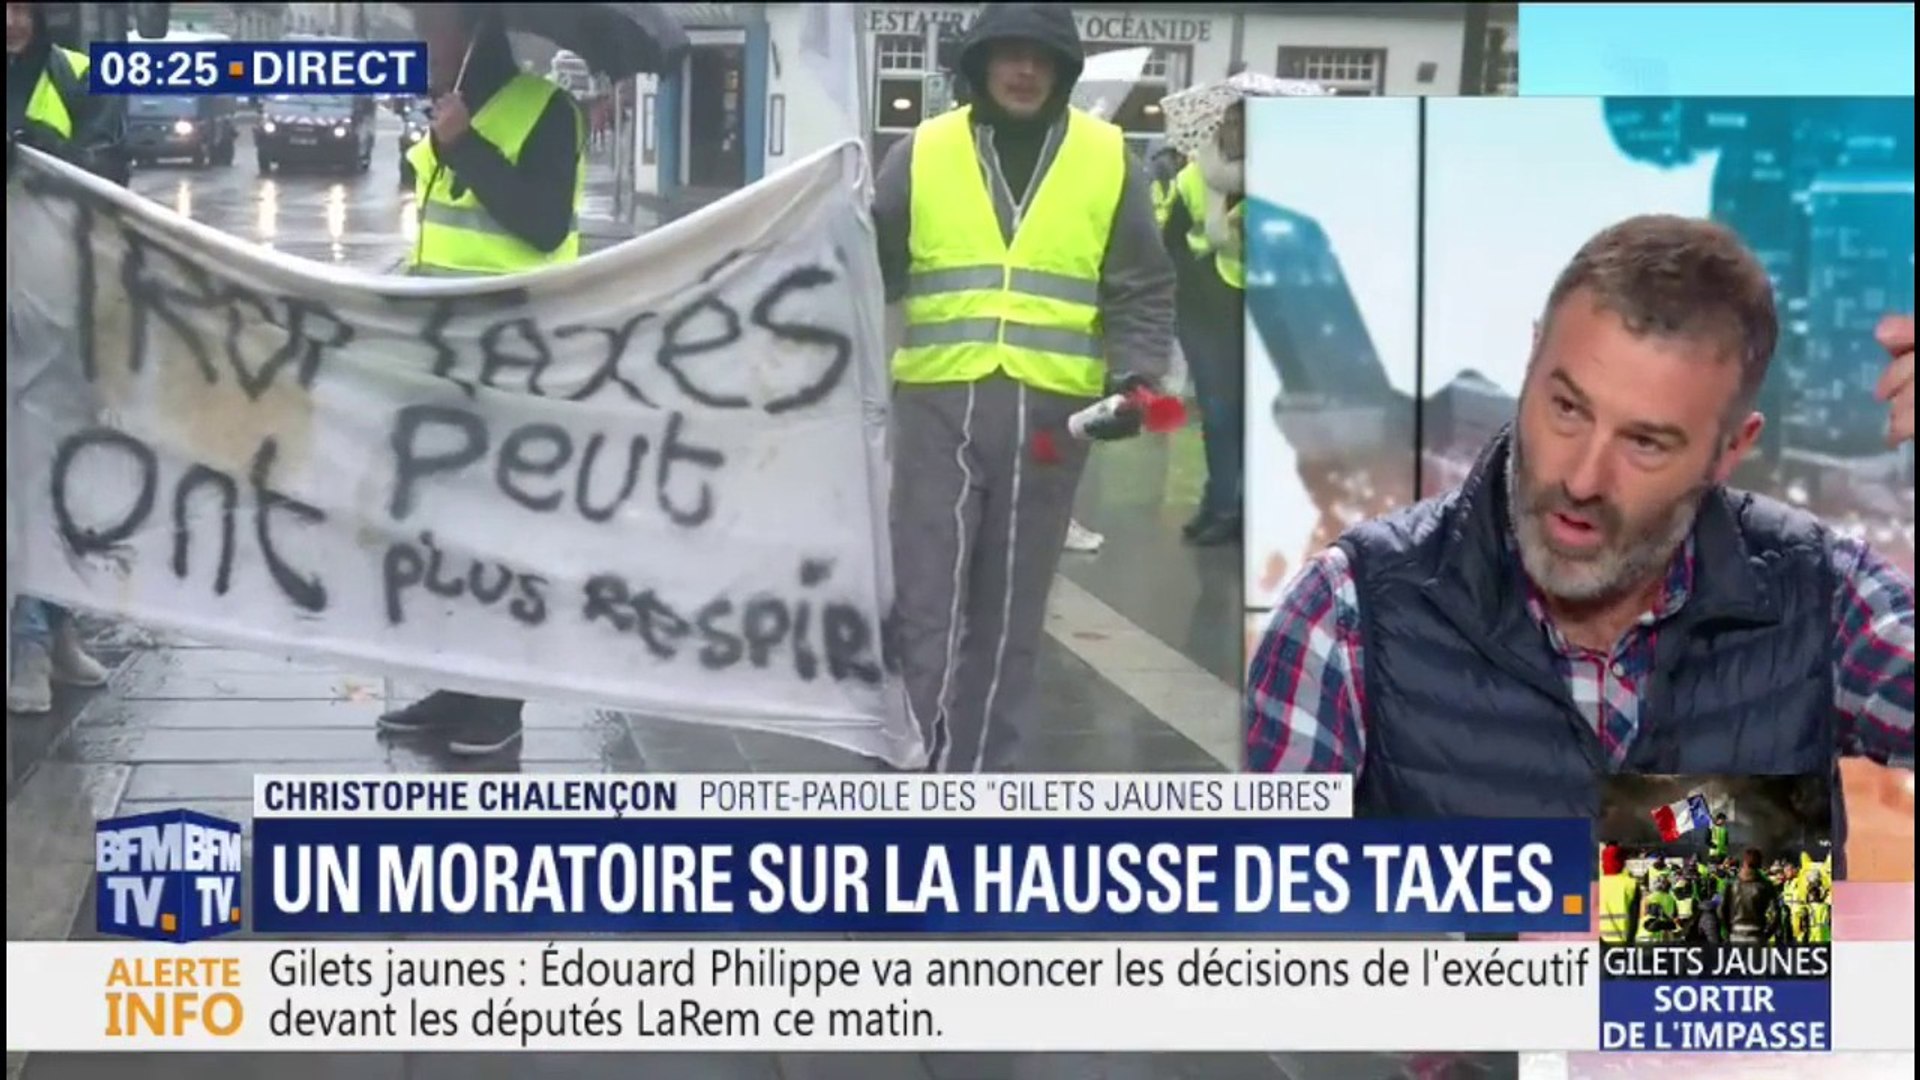 Christophe Chalençon, gilet jaune, sur le moratoire: "Ce n'est pas avec ça  qu'on va faire rentrer les gens chez eux" - Vidéo Dailymotion